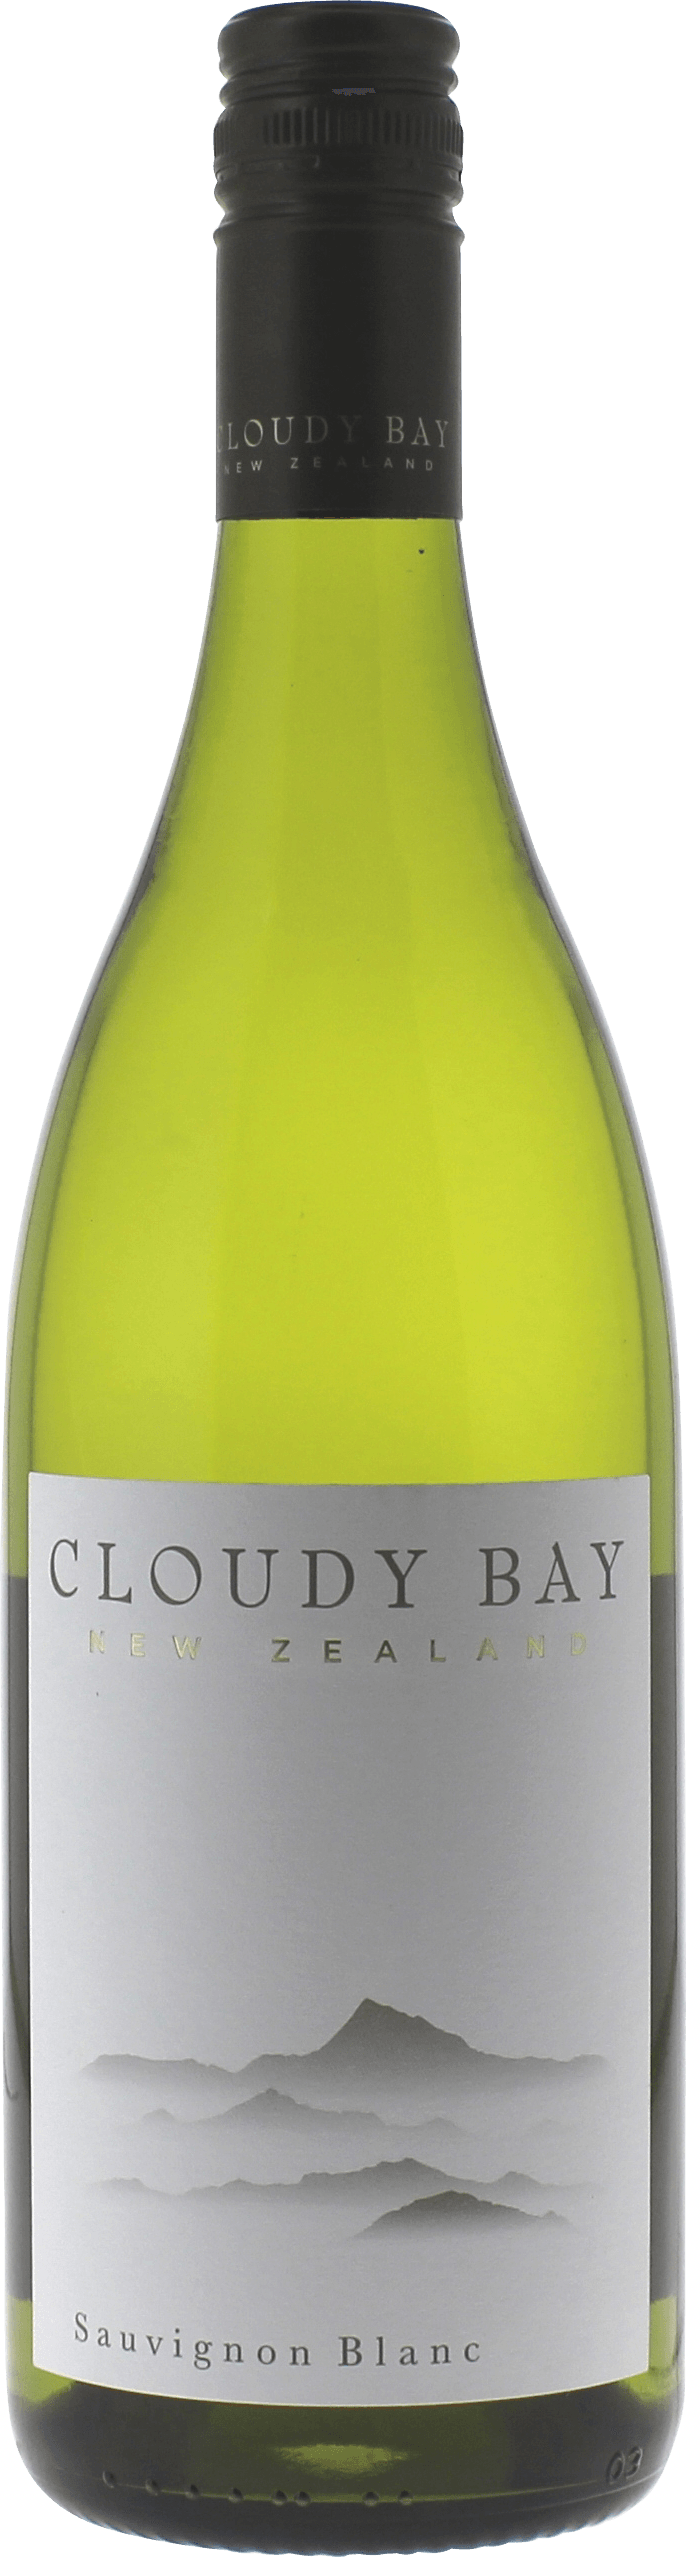 Cloudy bay sauvignon blanc marlborough 2017  , Nouvelle Zelande